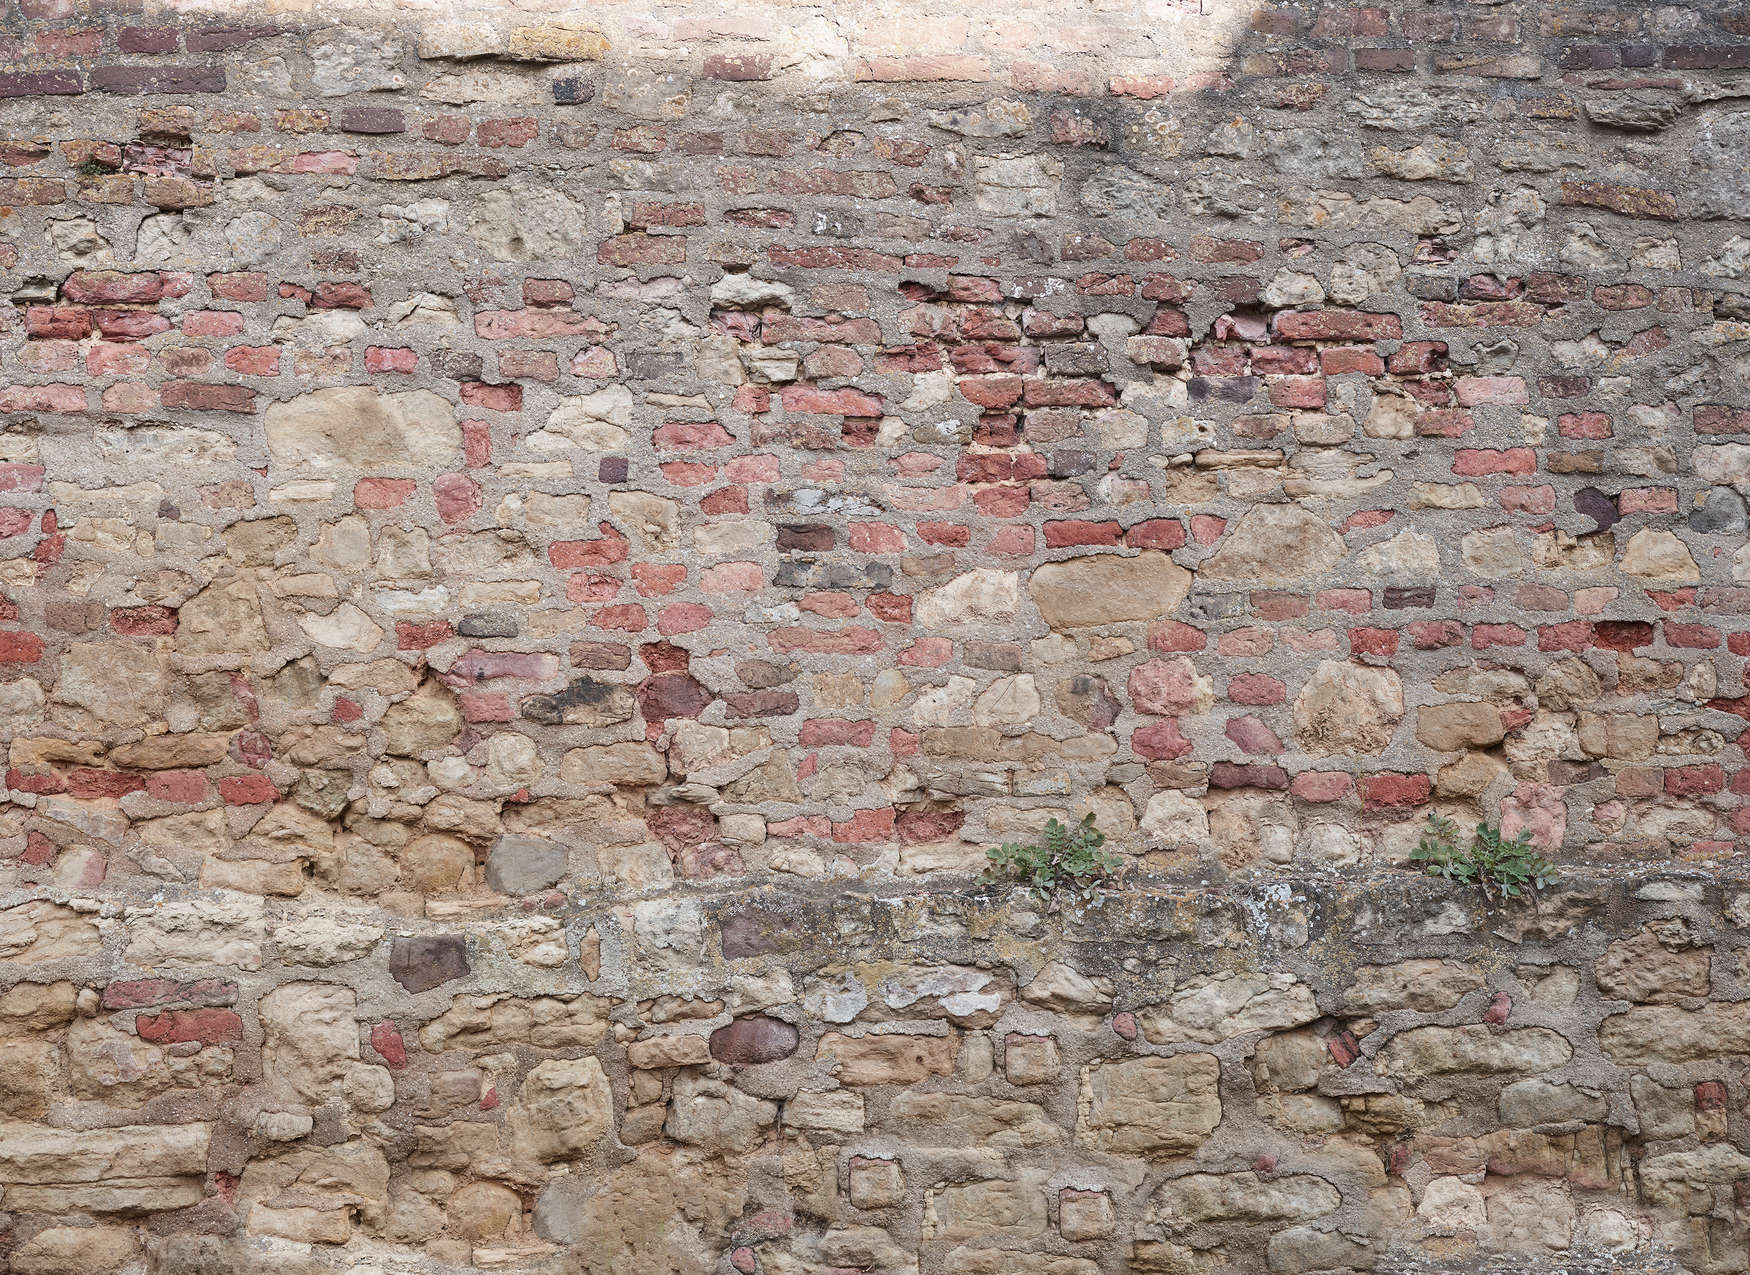             Fototapete Steinmauer mit Wildpflanzen im realistischen Industrialstyle – Rot, Braun, Grau
        